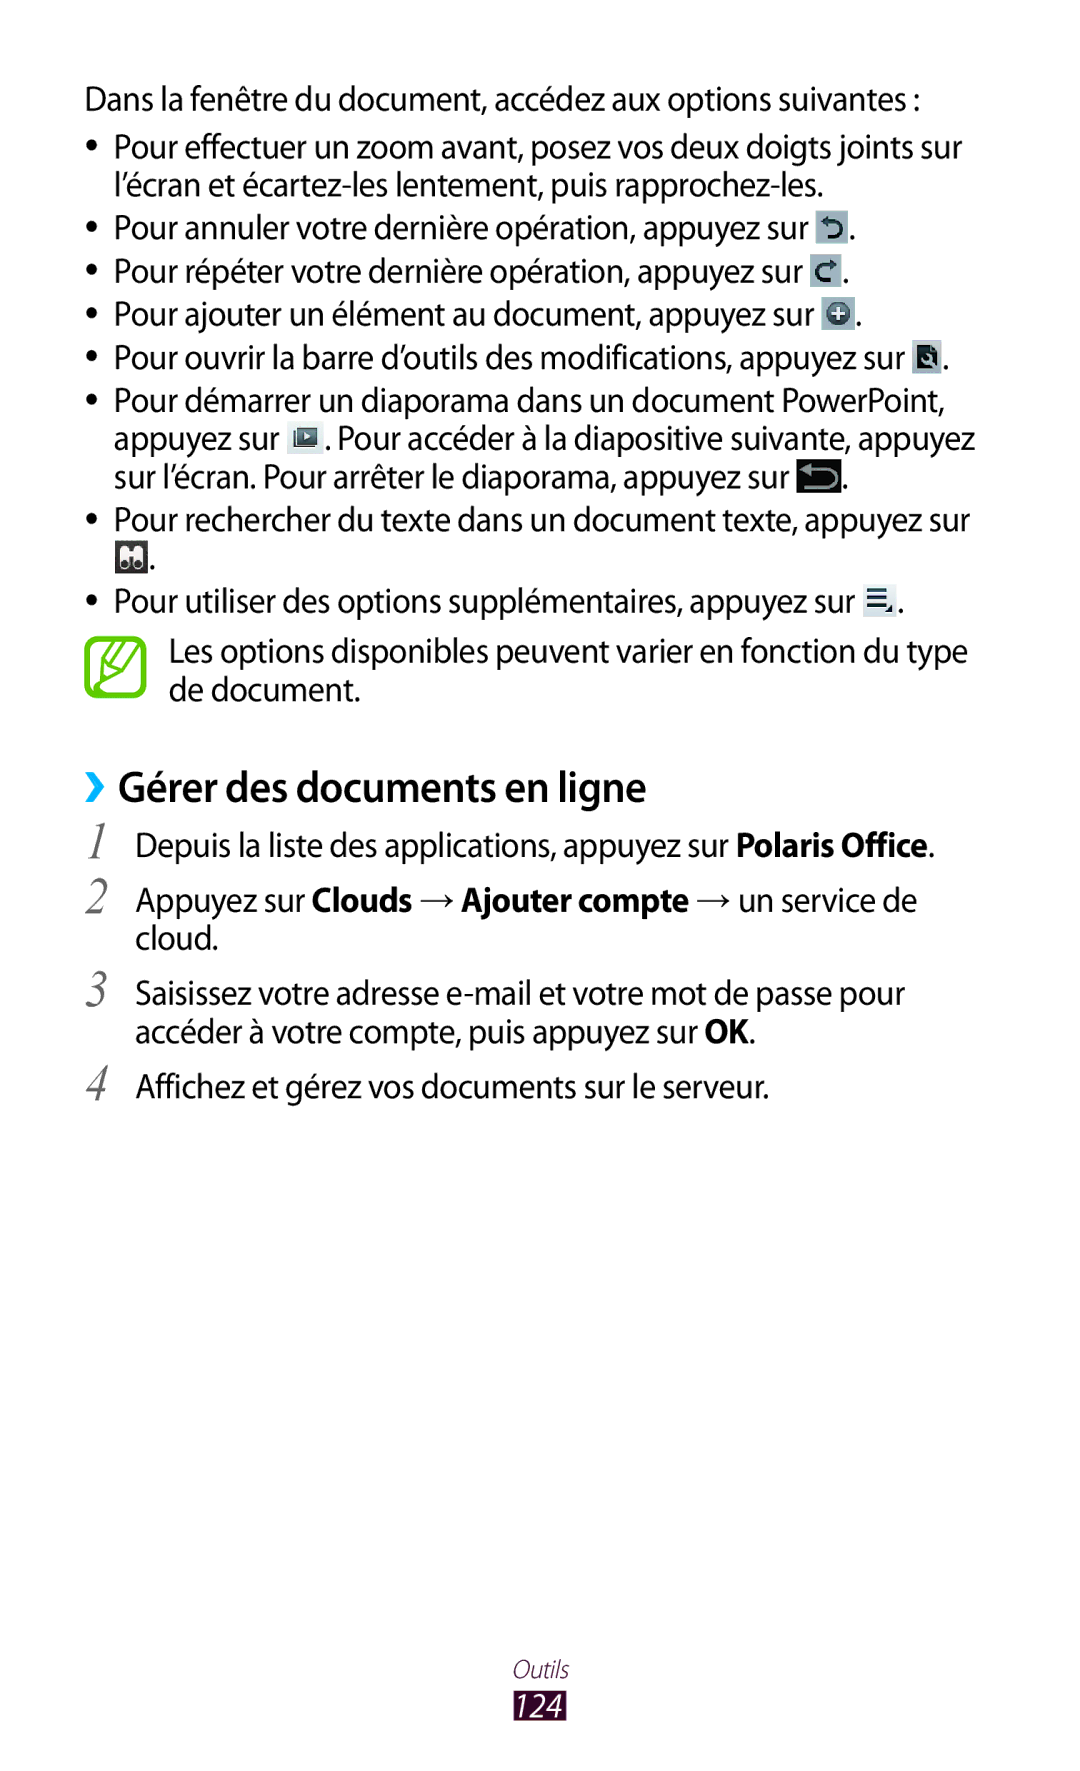 Samsung GT-P5100ZWAXEF ››Gérer des documents en ligne, Dans la fenêtre du document, accédez aux options suivantes, 124 